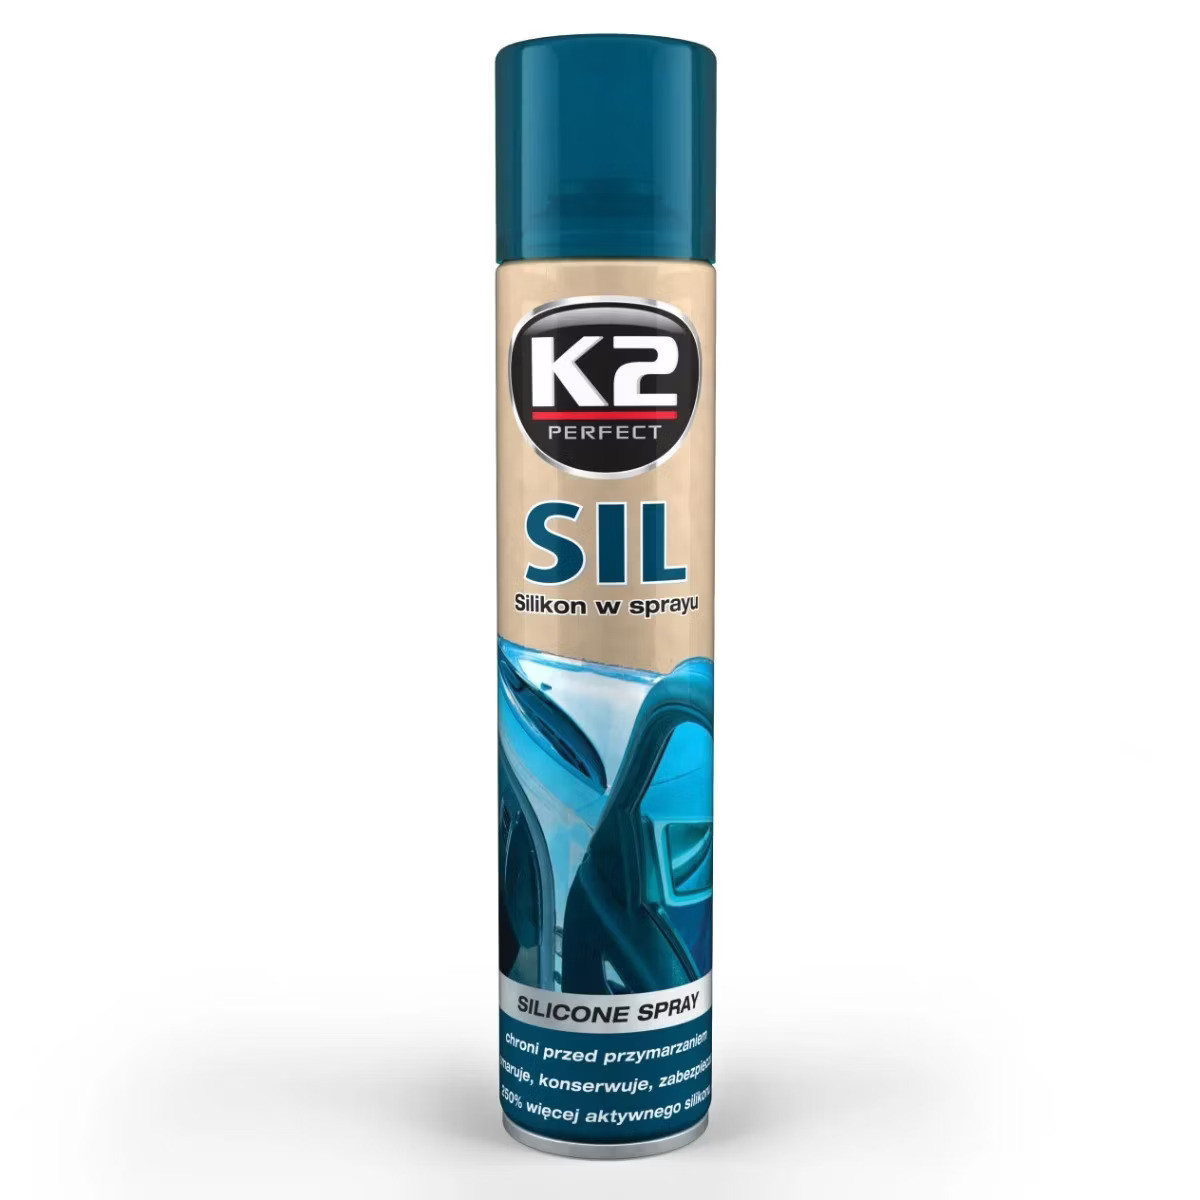 K2 sil 100% silikon w sprayu - do uszczelek